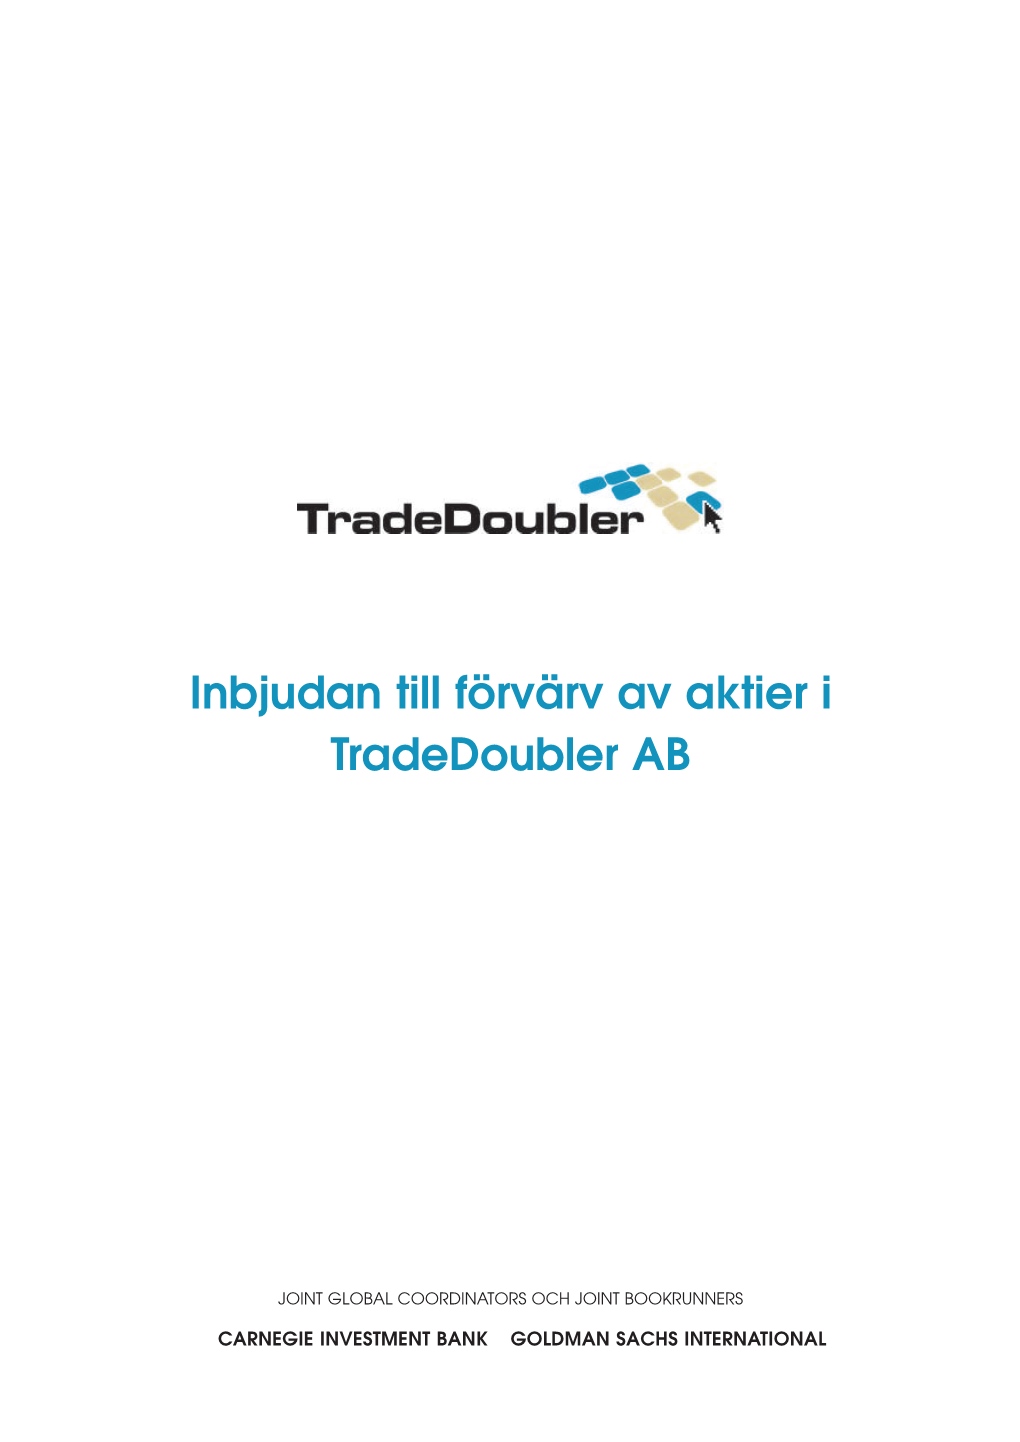 Tradedoubler Swedish